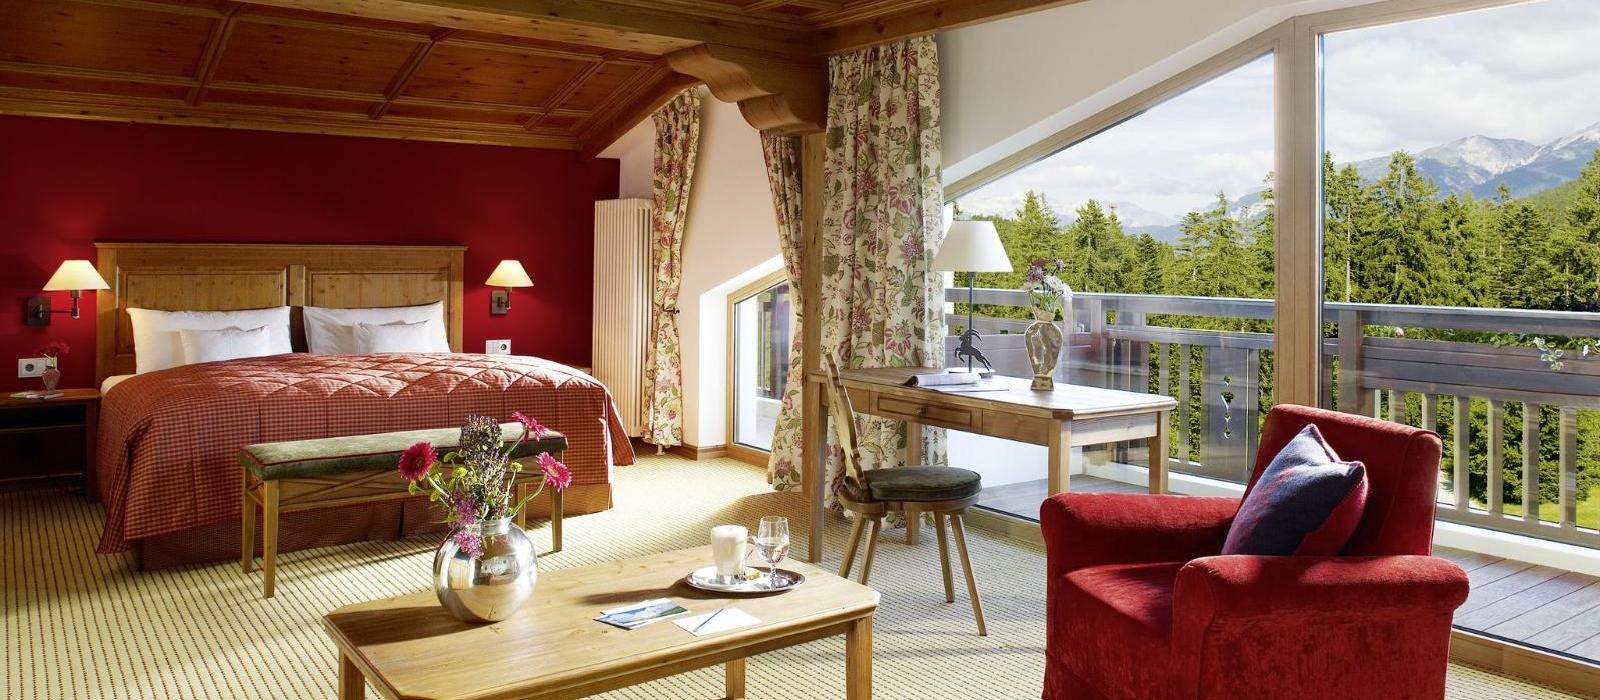 阿尔卑斯山蒂罗尔度假酒店(Interalpen-Hotel Tyrol) 套房图片  www.lhw.cn